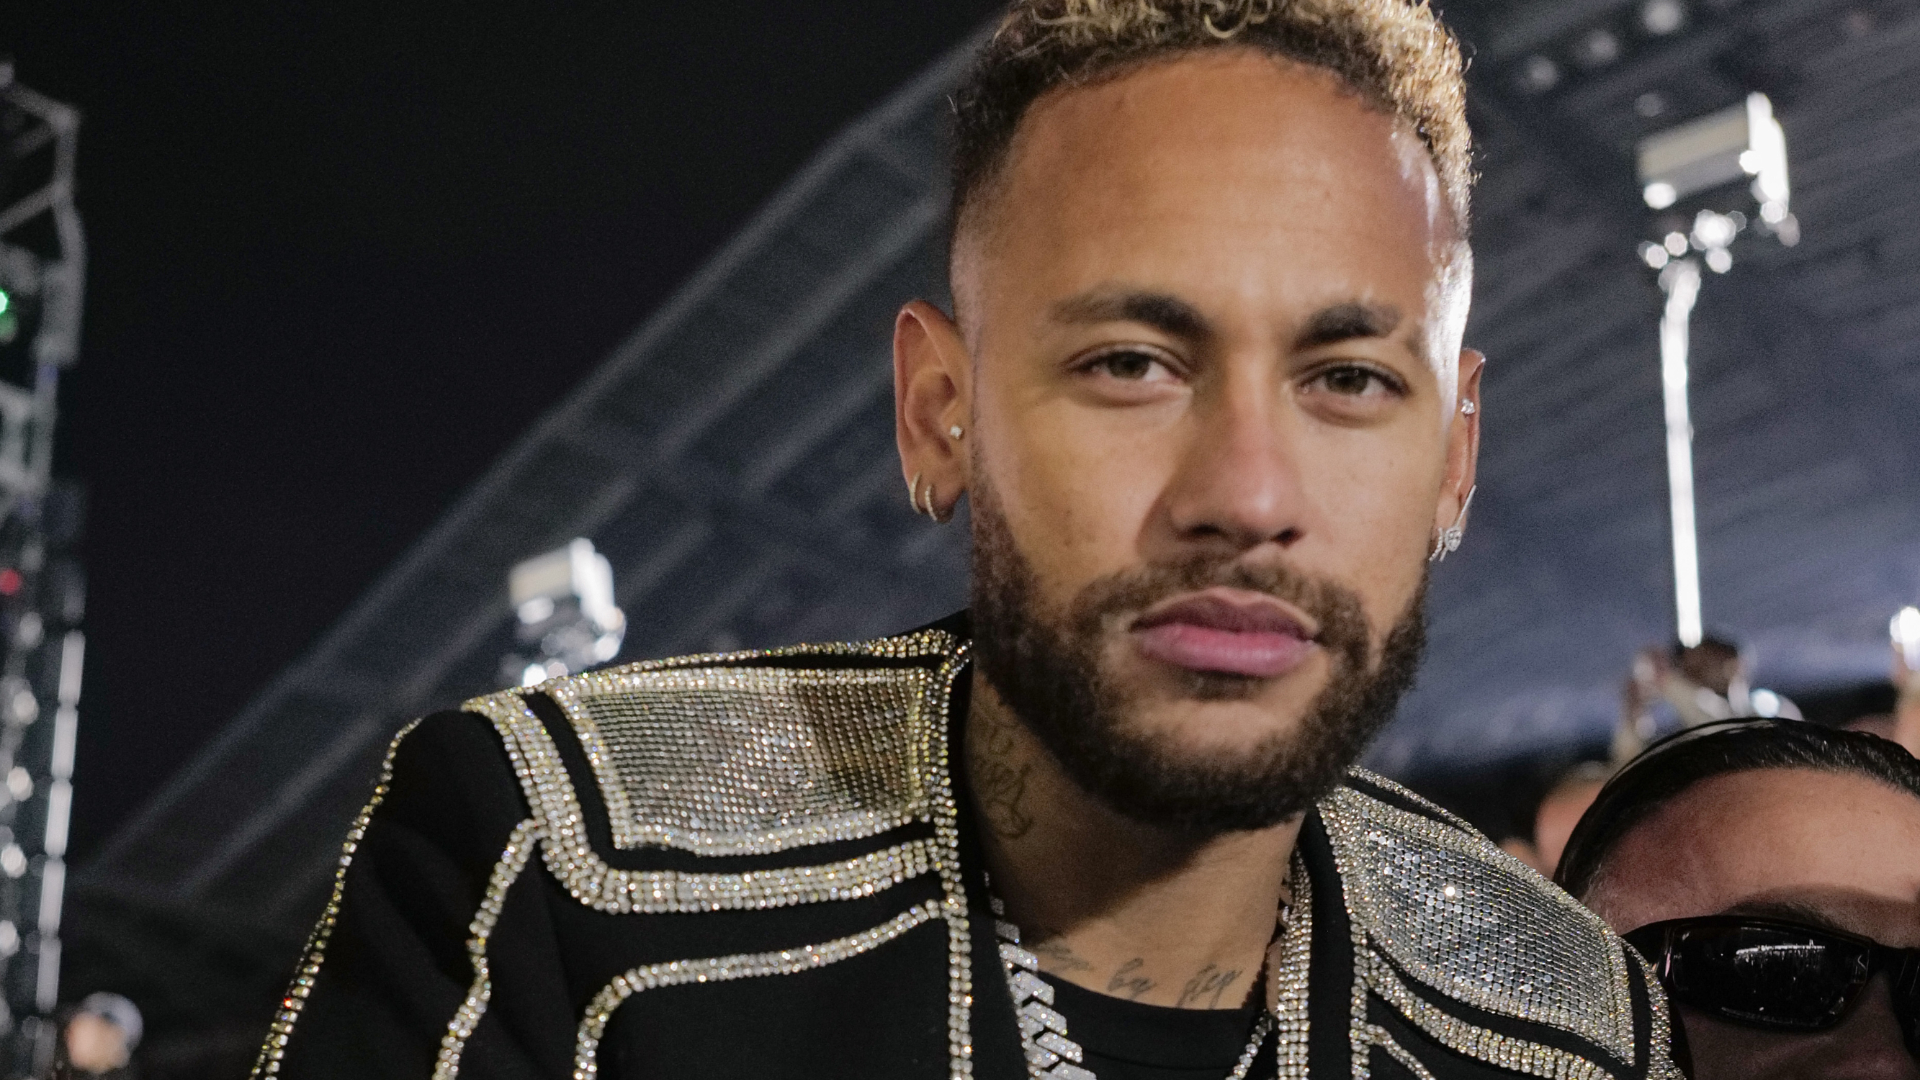 Equipe de Neymar se manifesta após vídeo em balada, e revela status de relacionamento do jogador com Bruna Biancardi